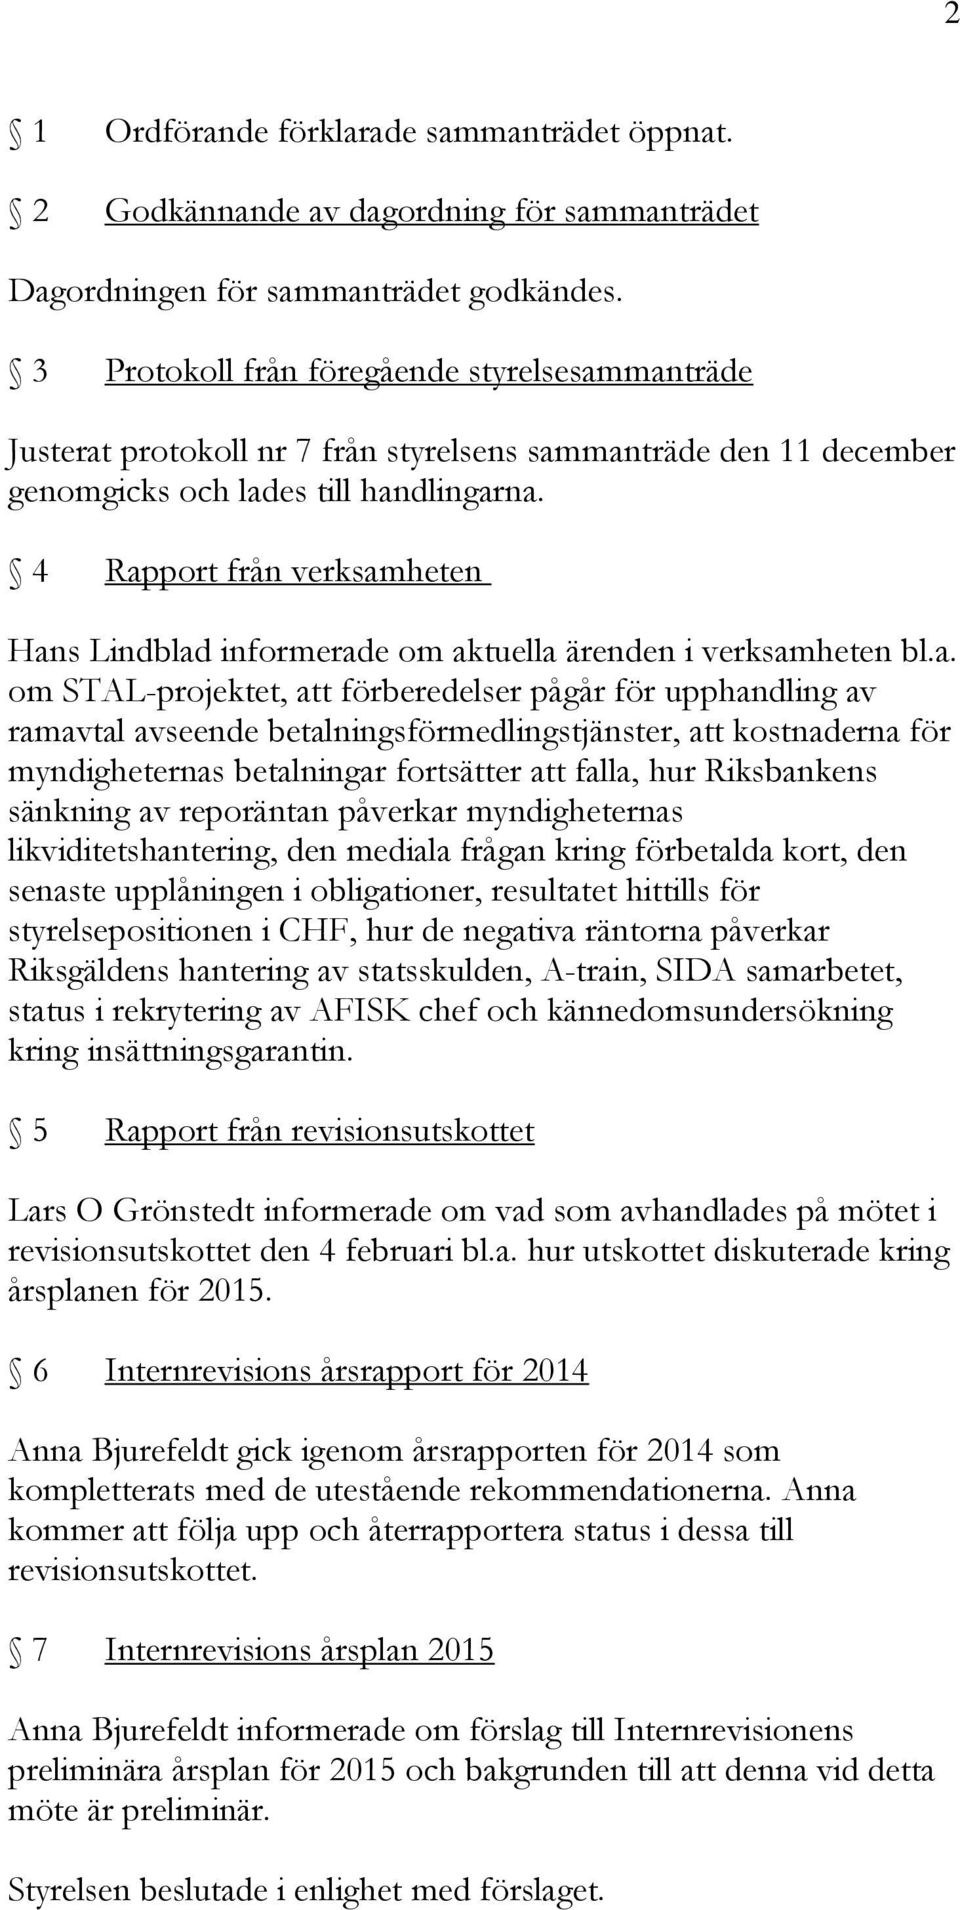 4 Rapport från verksamheten Hans Lindblad informerade om aktuella ärenden i verksamheten bl.a. om STAL-projektet, att förberedelser pågår för upphandling av ramavtal avseende